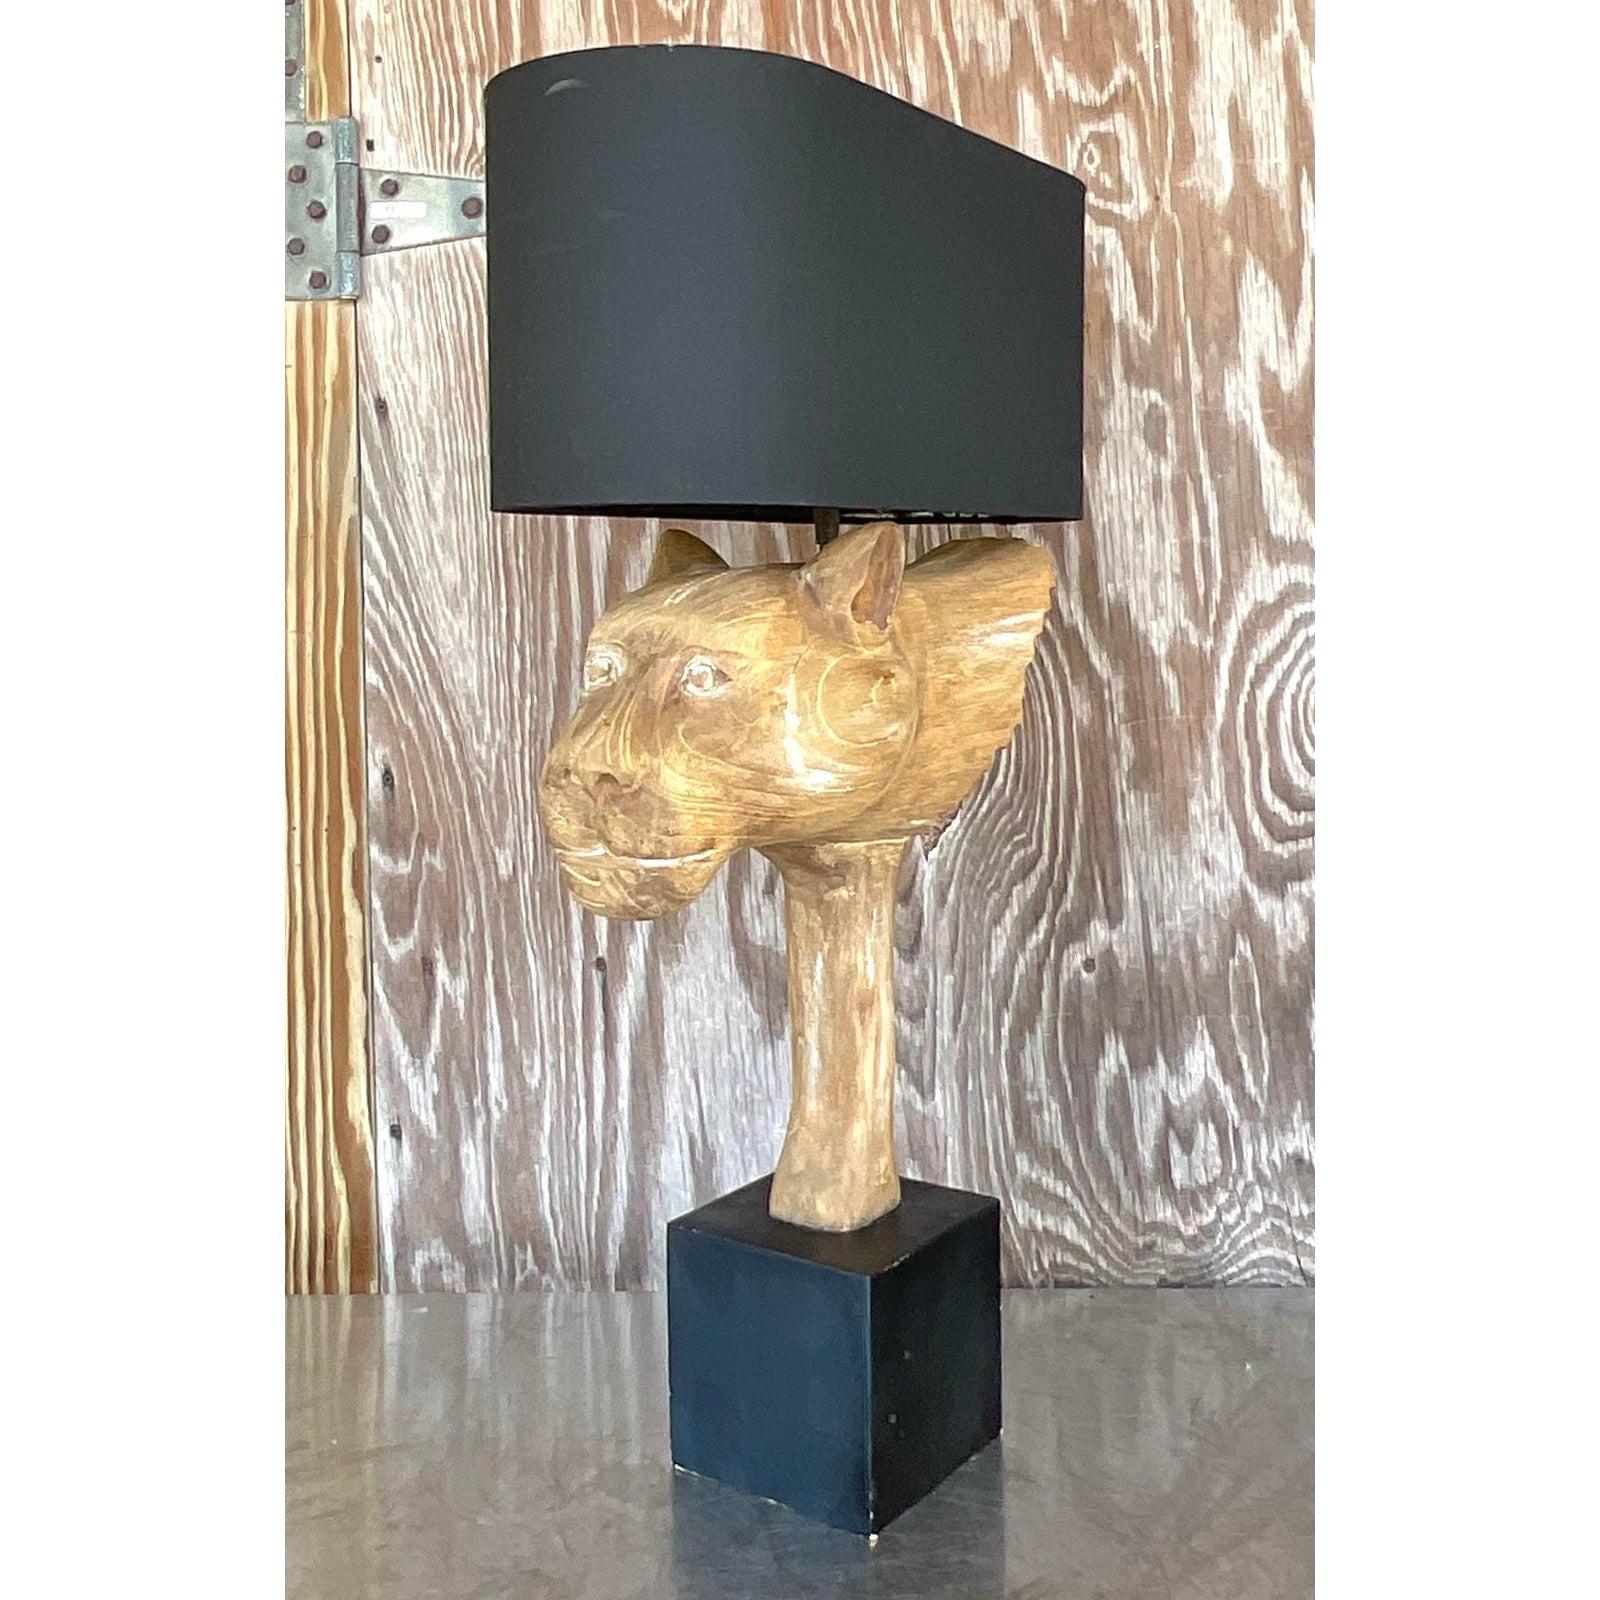 Une lampe de table Boho vintage remarquable. Une magnifique finition cérusée sur bois avec un abat-jour coordonné en lin noir. Une belle tête de lion ailée. Acquis auprès d'une succession de Palm Beach.